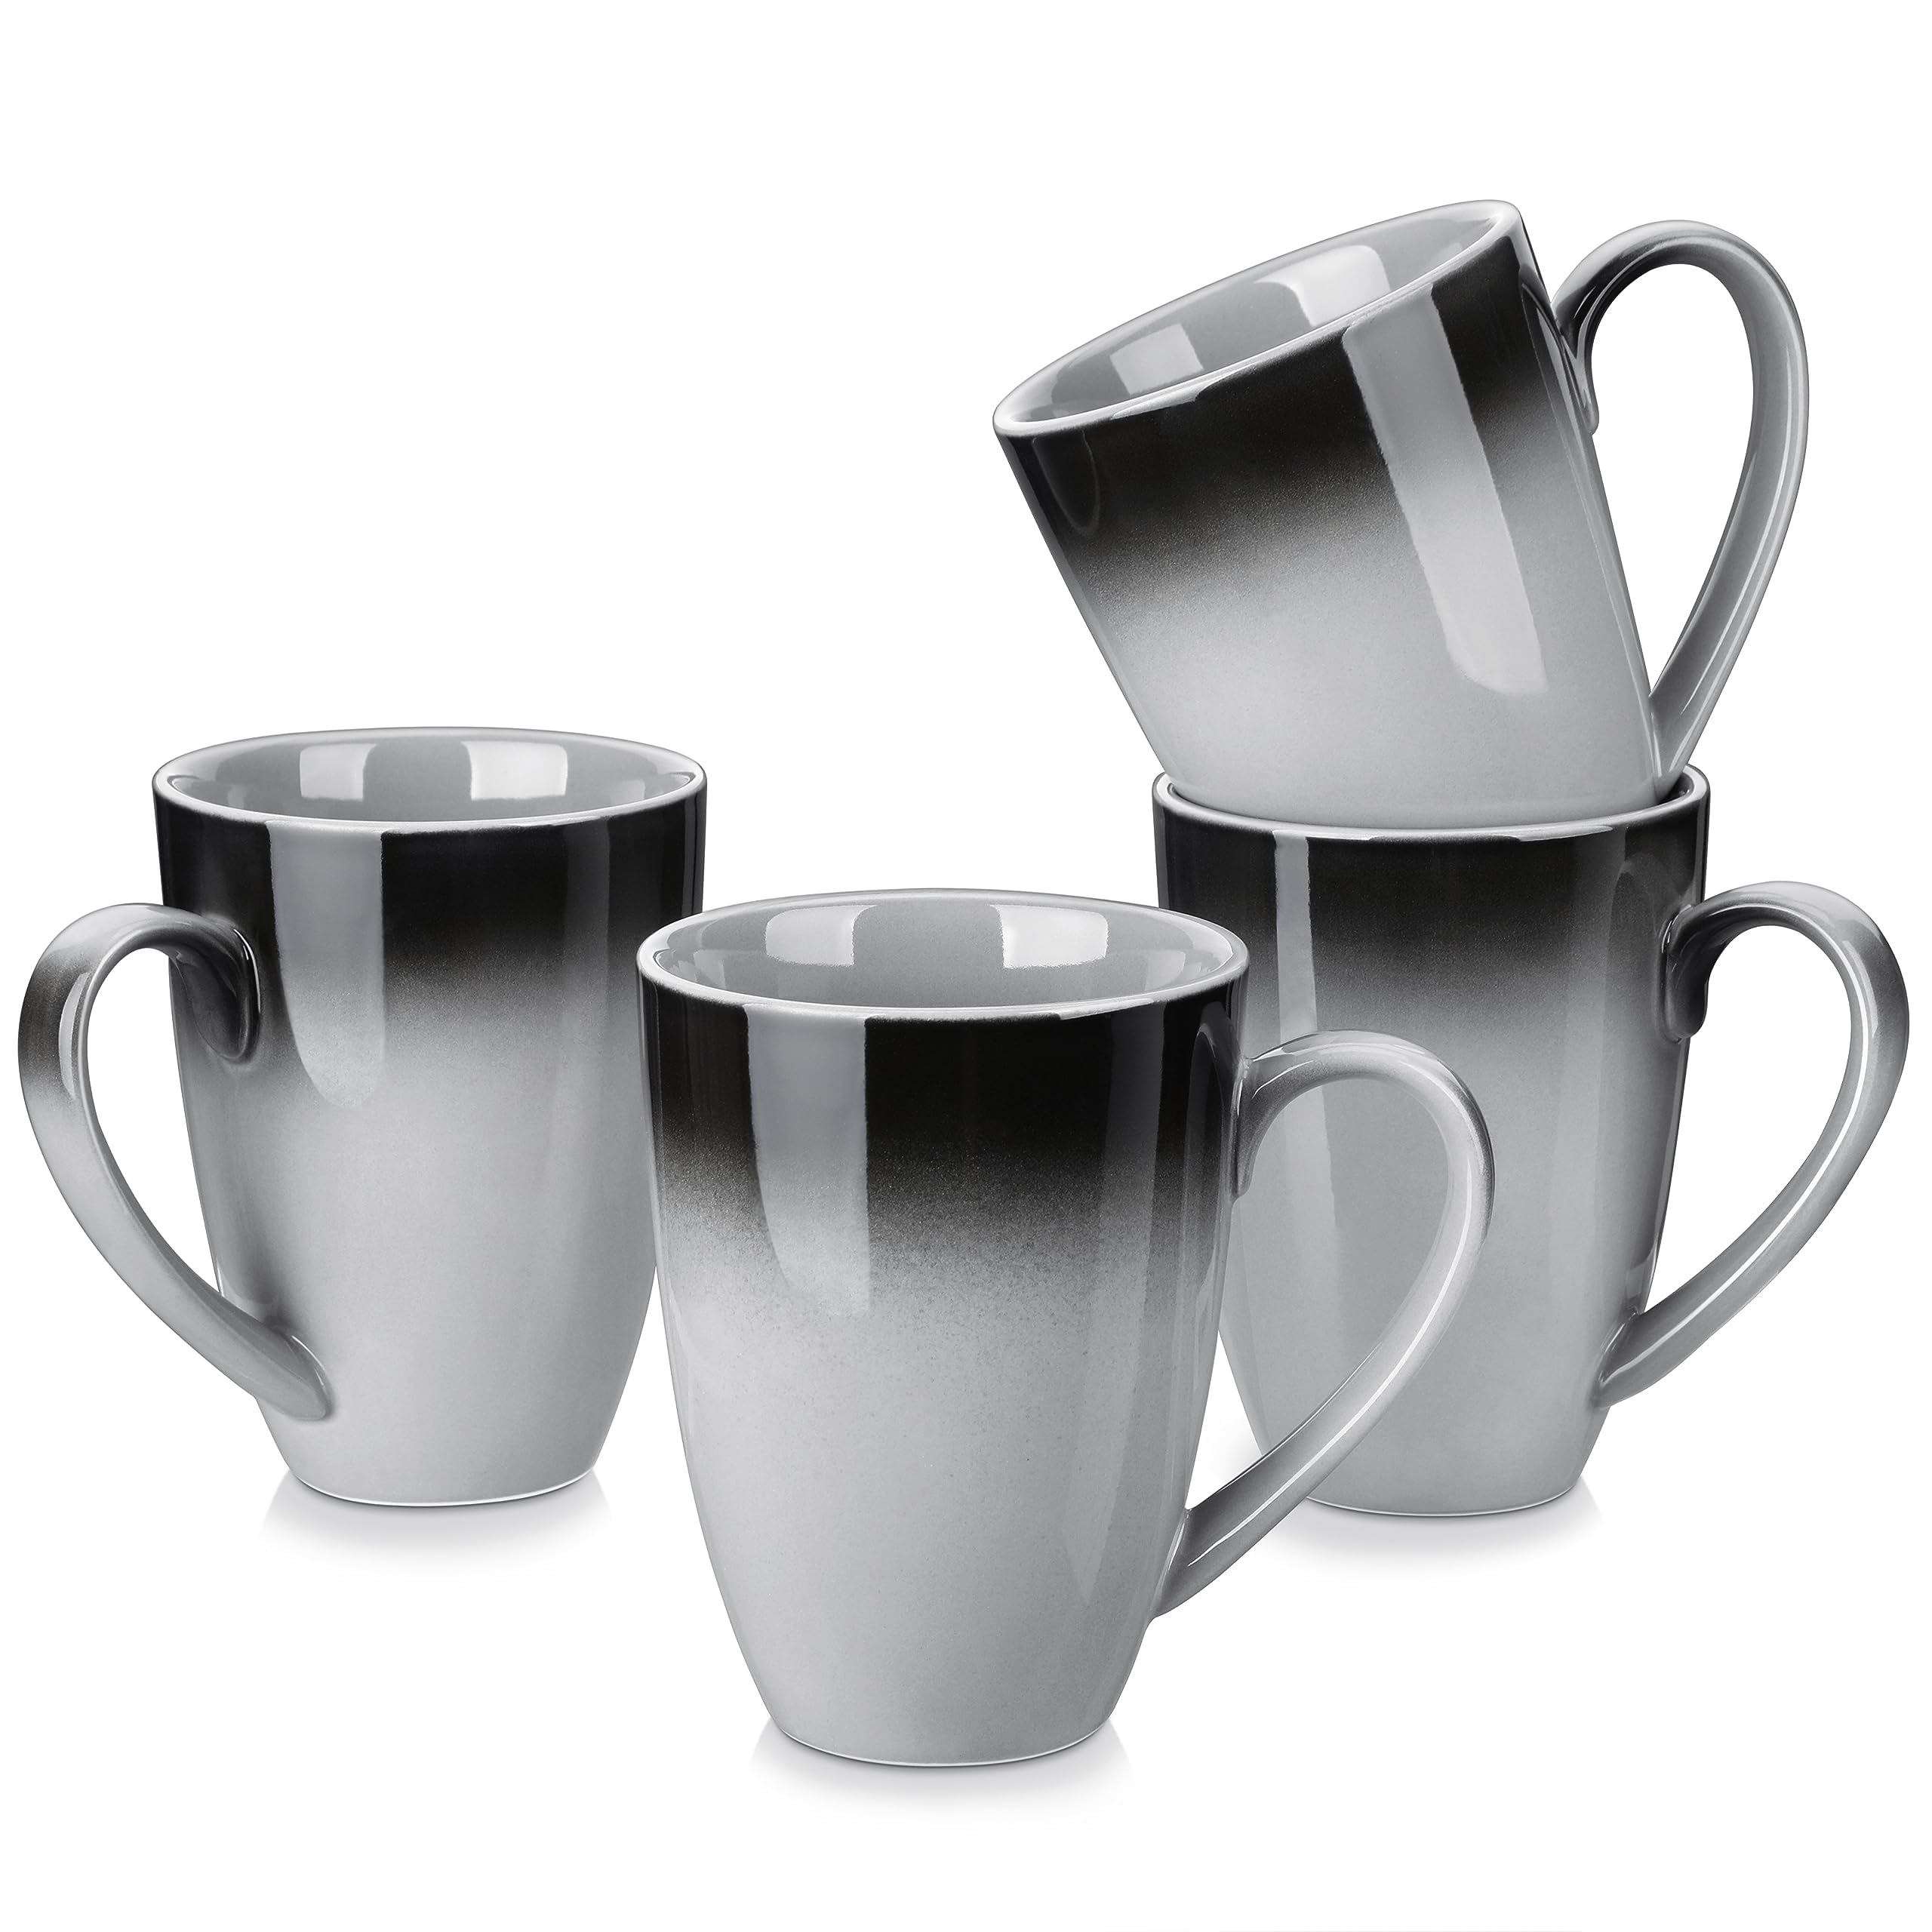 vente chaude LOVECASA Ensemble de 4 Tasses Mugs à Café en Grès | 620ml | grand Service de Mug avec Poignée | Ø10 x H13 cm | Adapté au Lave-Vaisselle et au Micro-Ondes | Gris Dégradé ANI29HwHI en solde